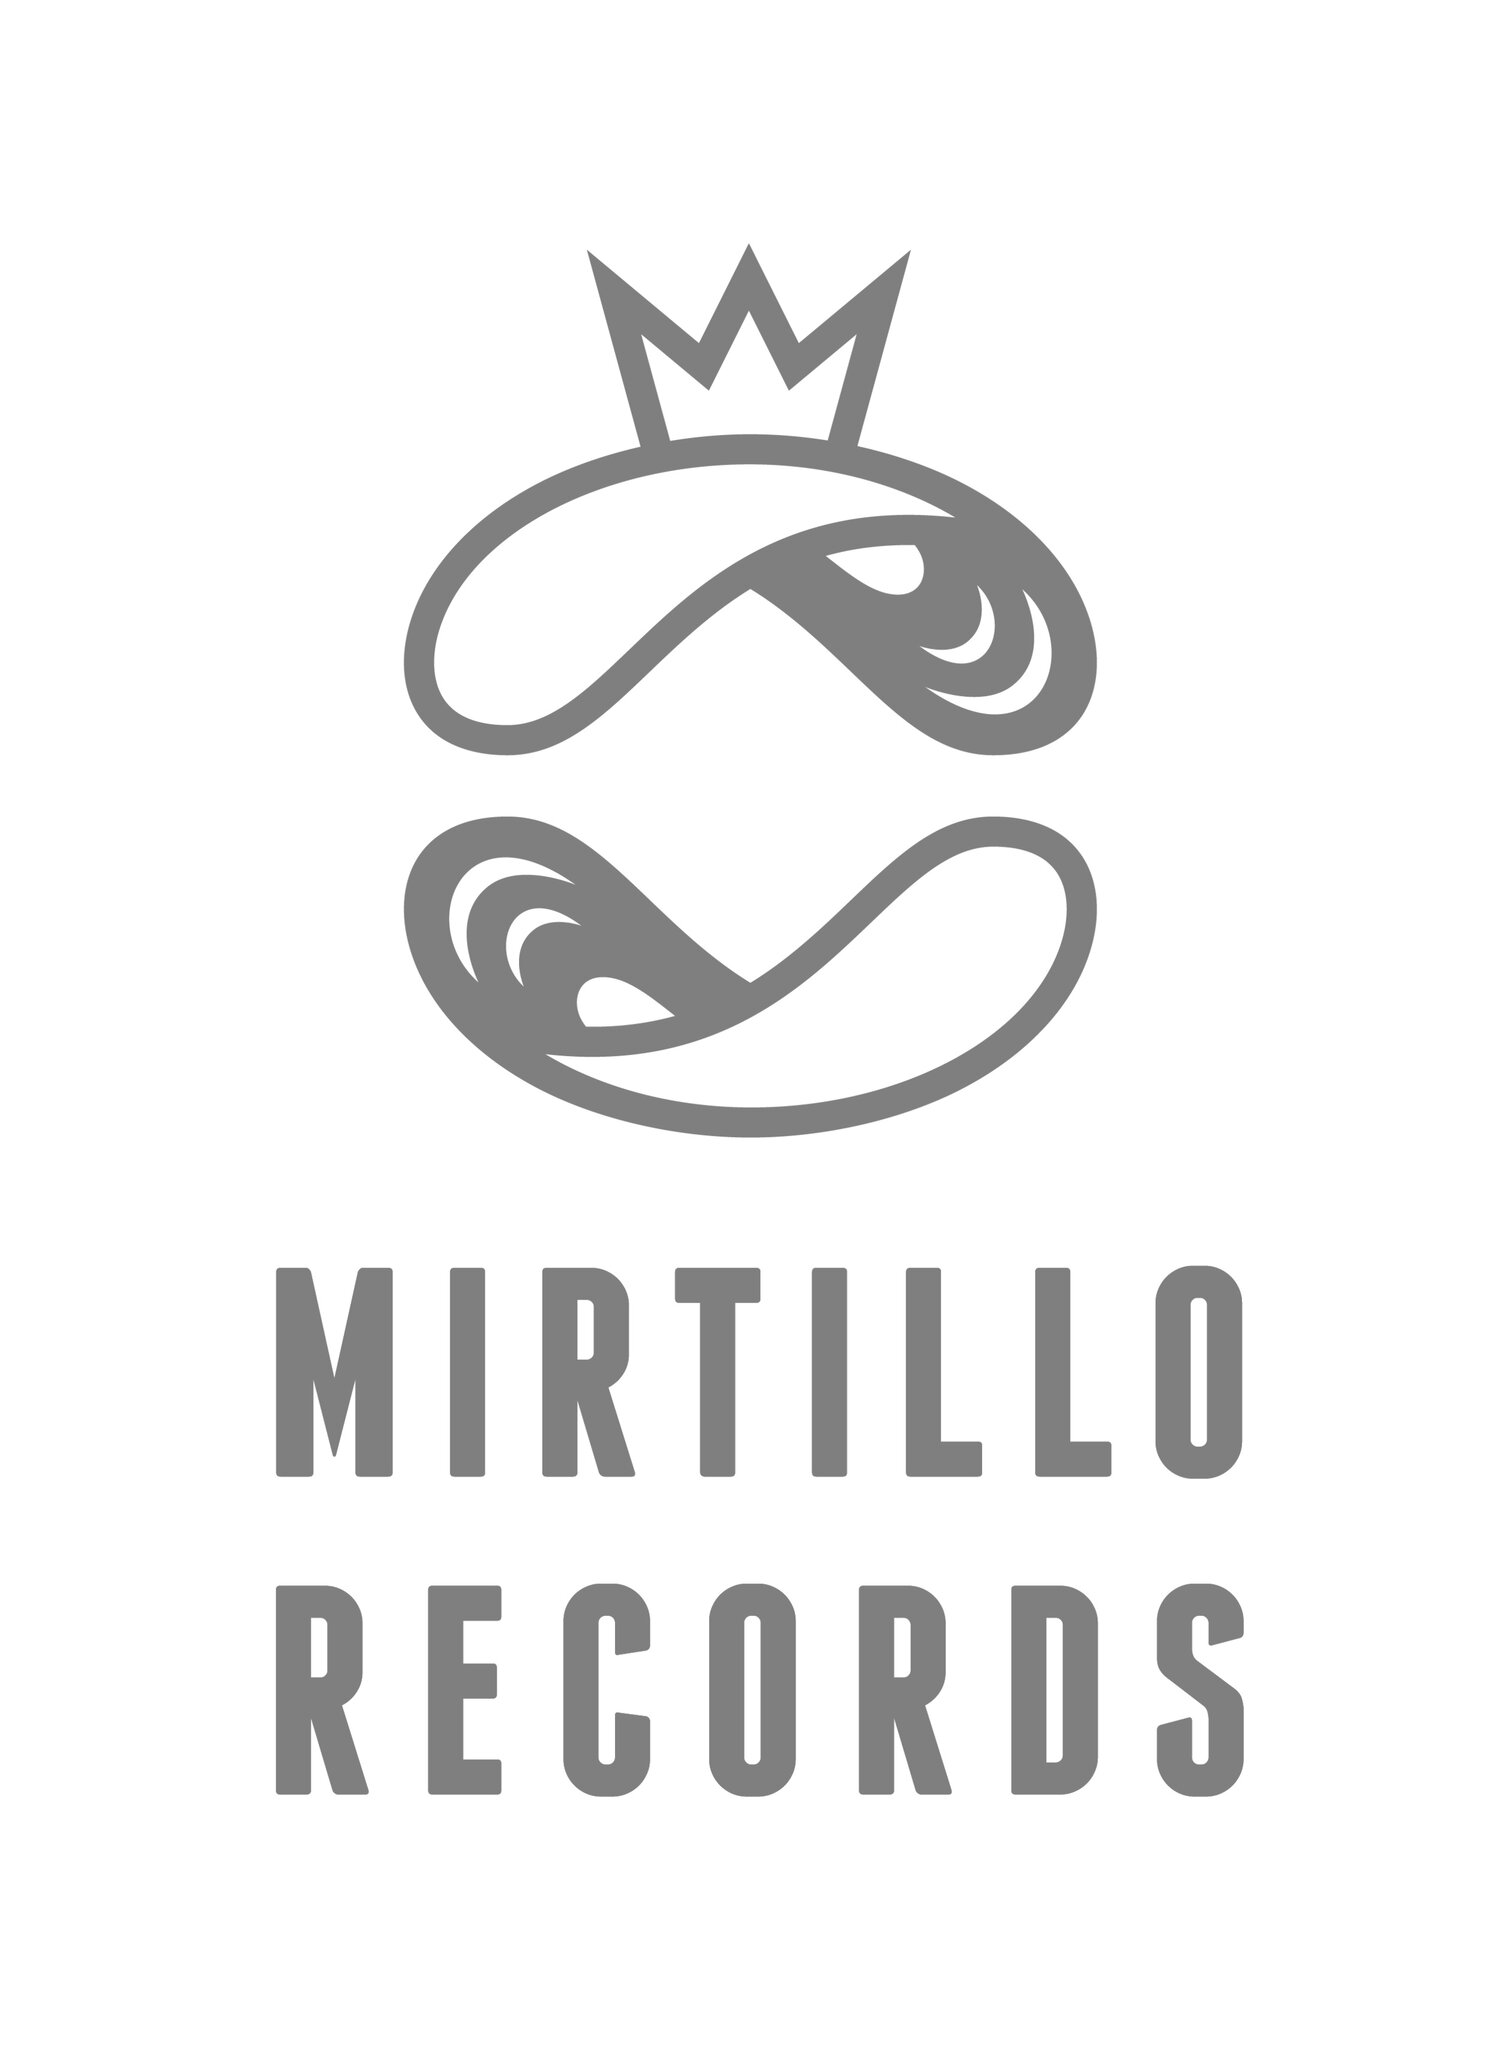 Mirtillo Records